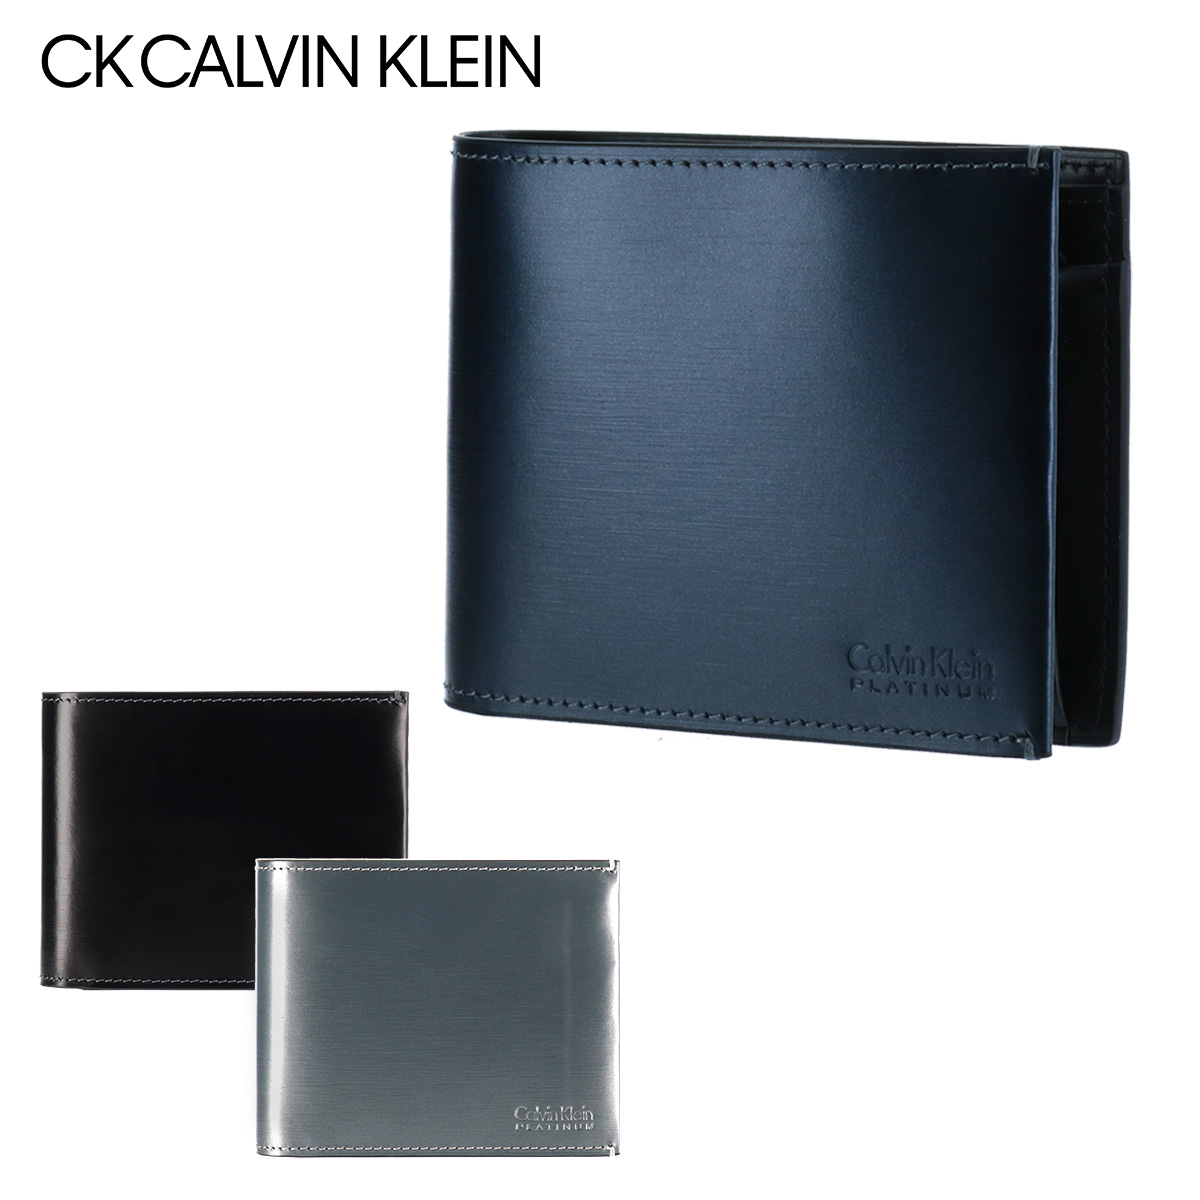 CK CALVIN KLEIN ヘアラインシリーズ